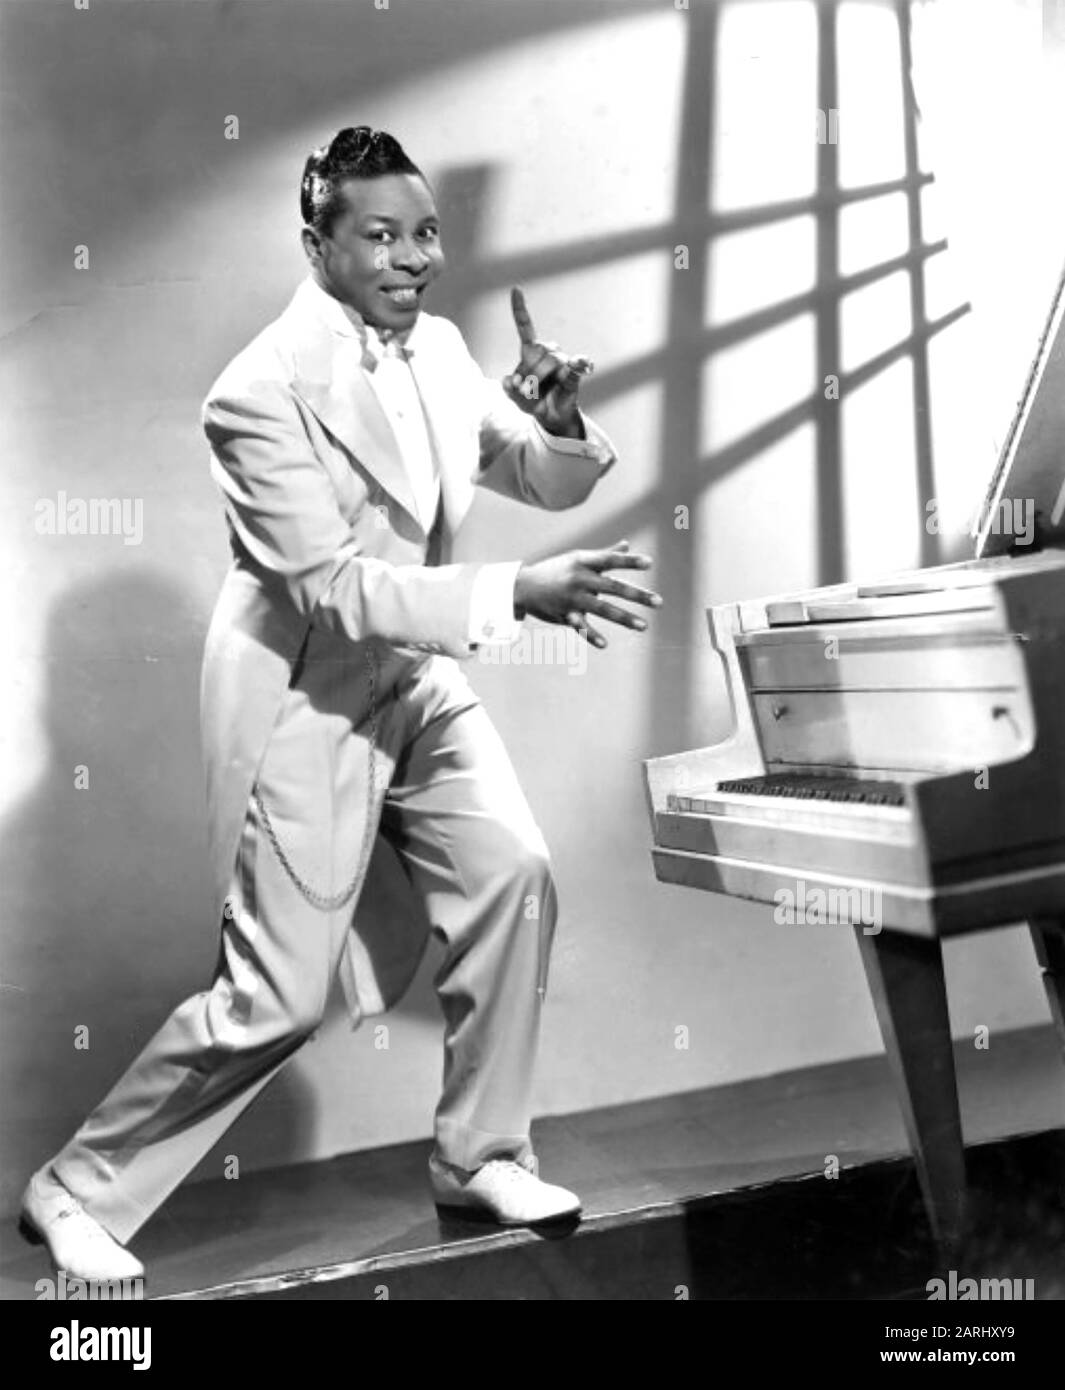 Maurice ROCCO (1915-1976) photo promotionnelle du pianiste américain de la boogie-woogie vers 1944 Banque D'Images